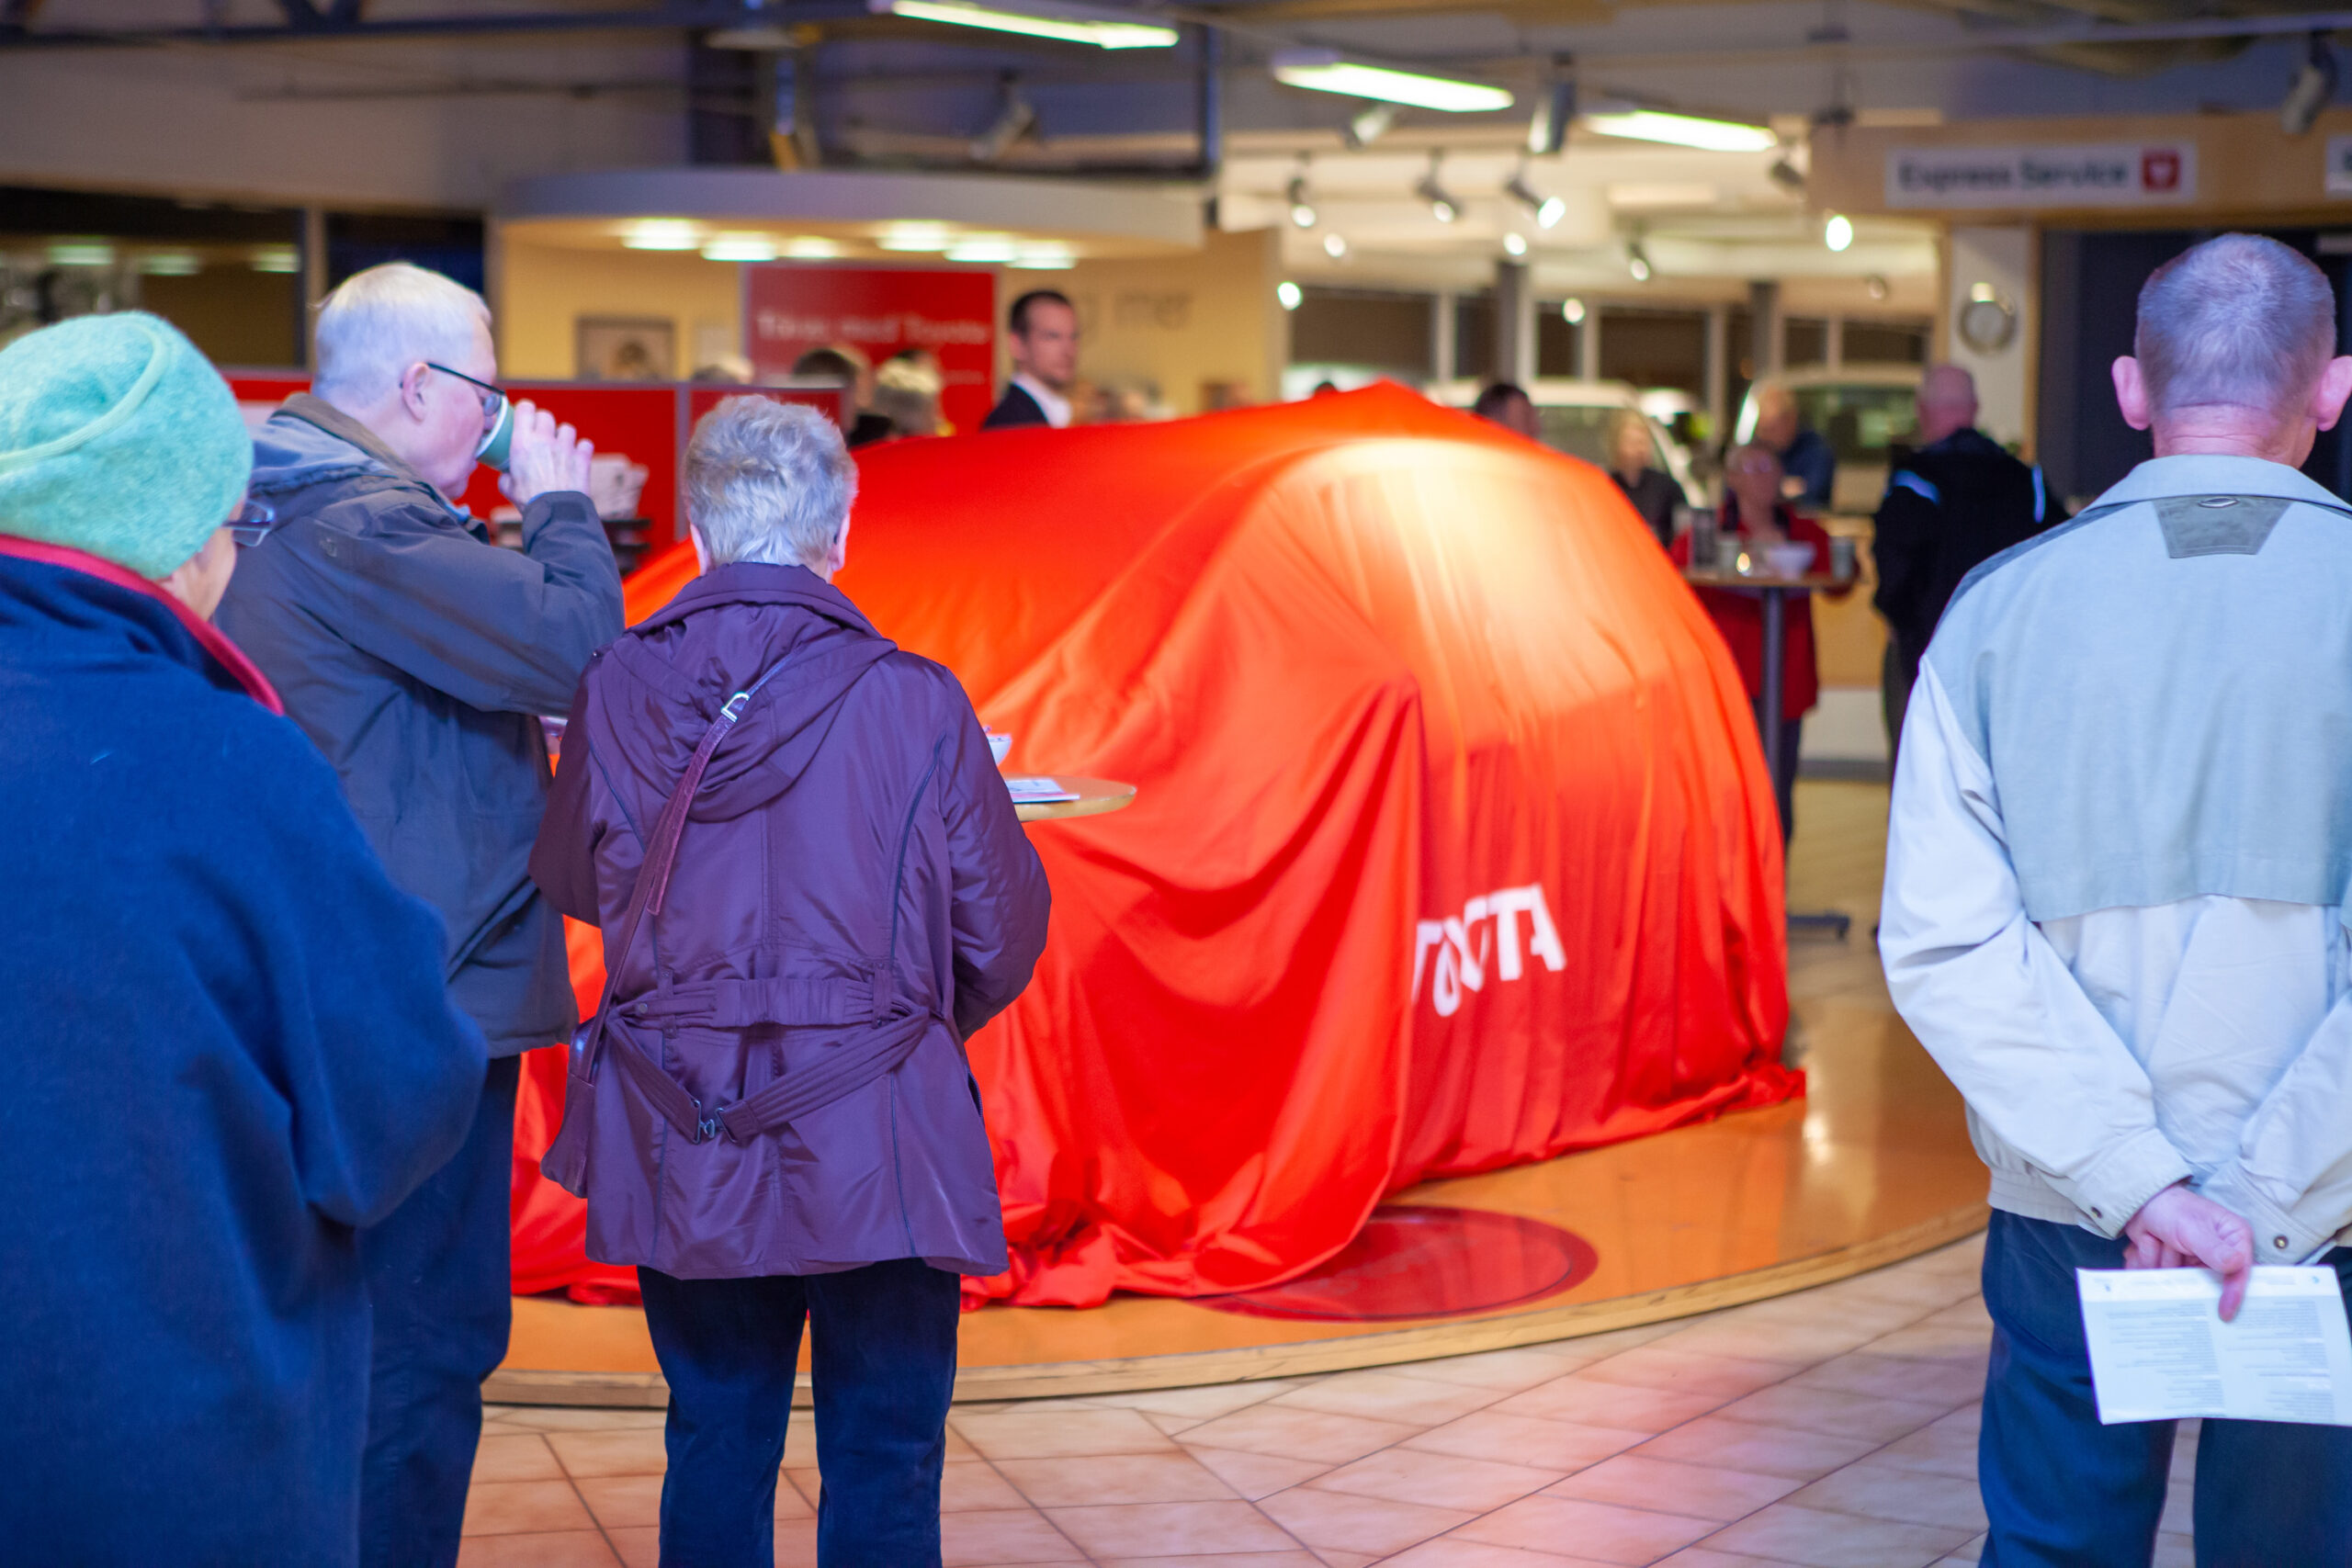 Toyota Yaris Sweden Release - Lindströms Bil